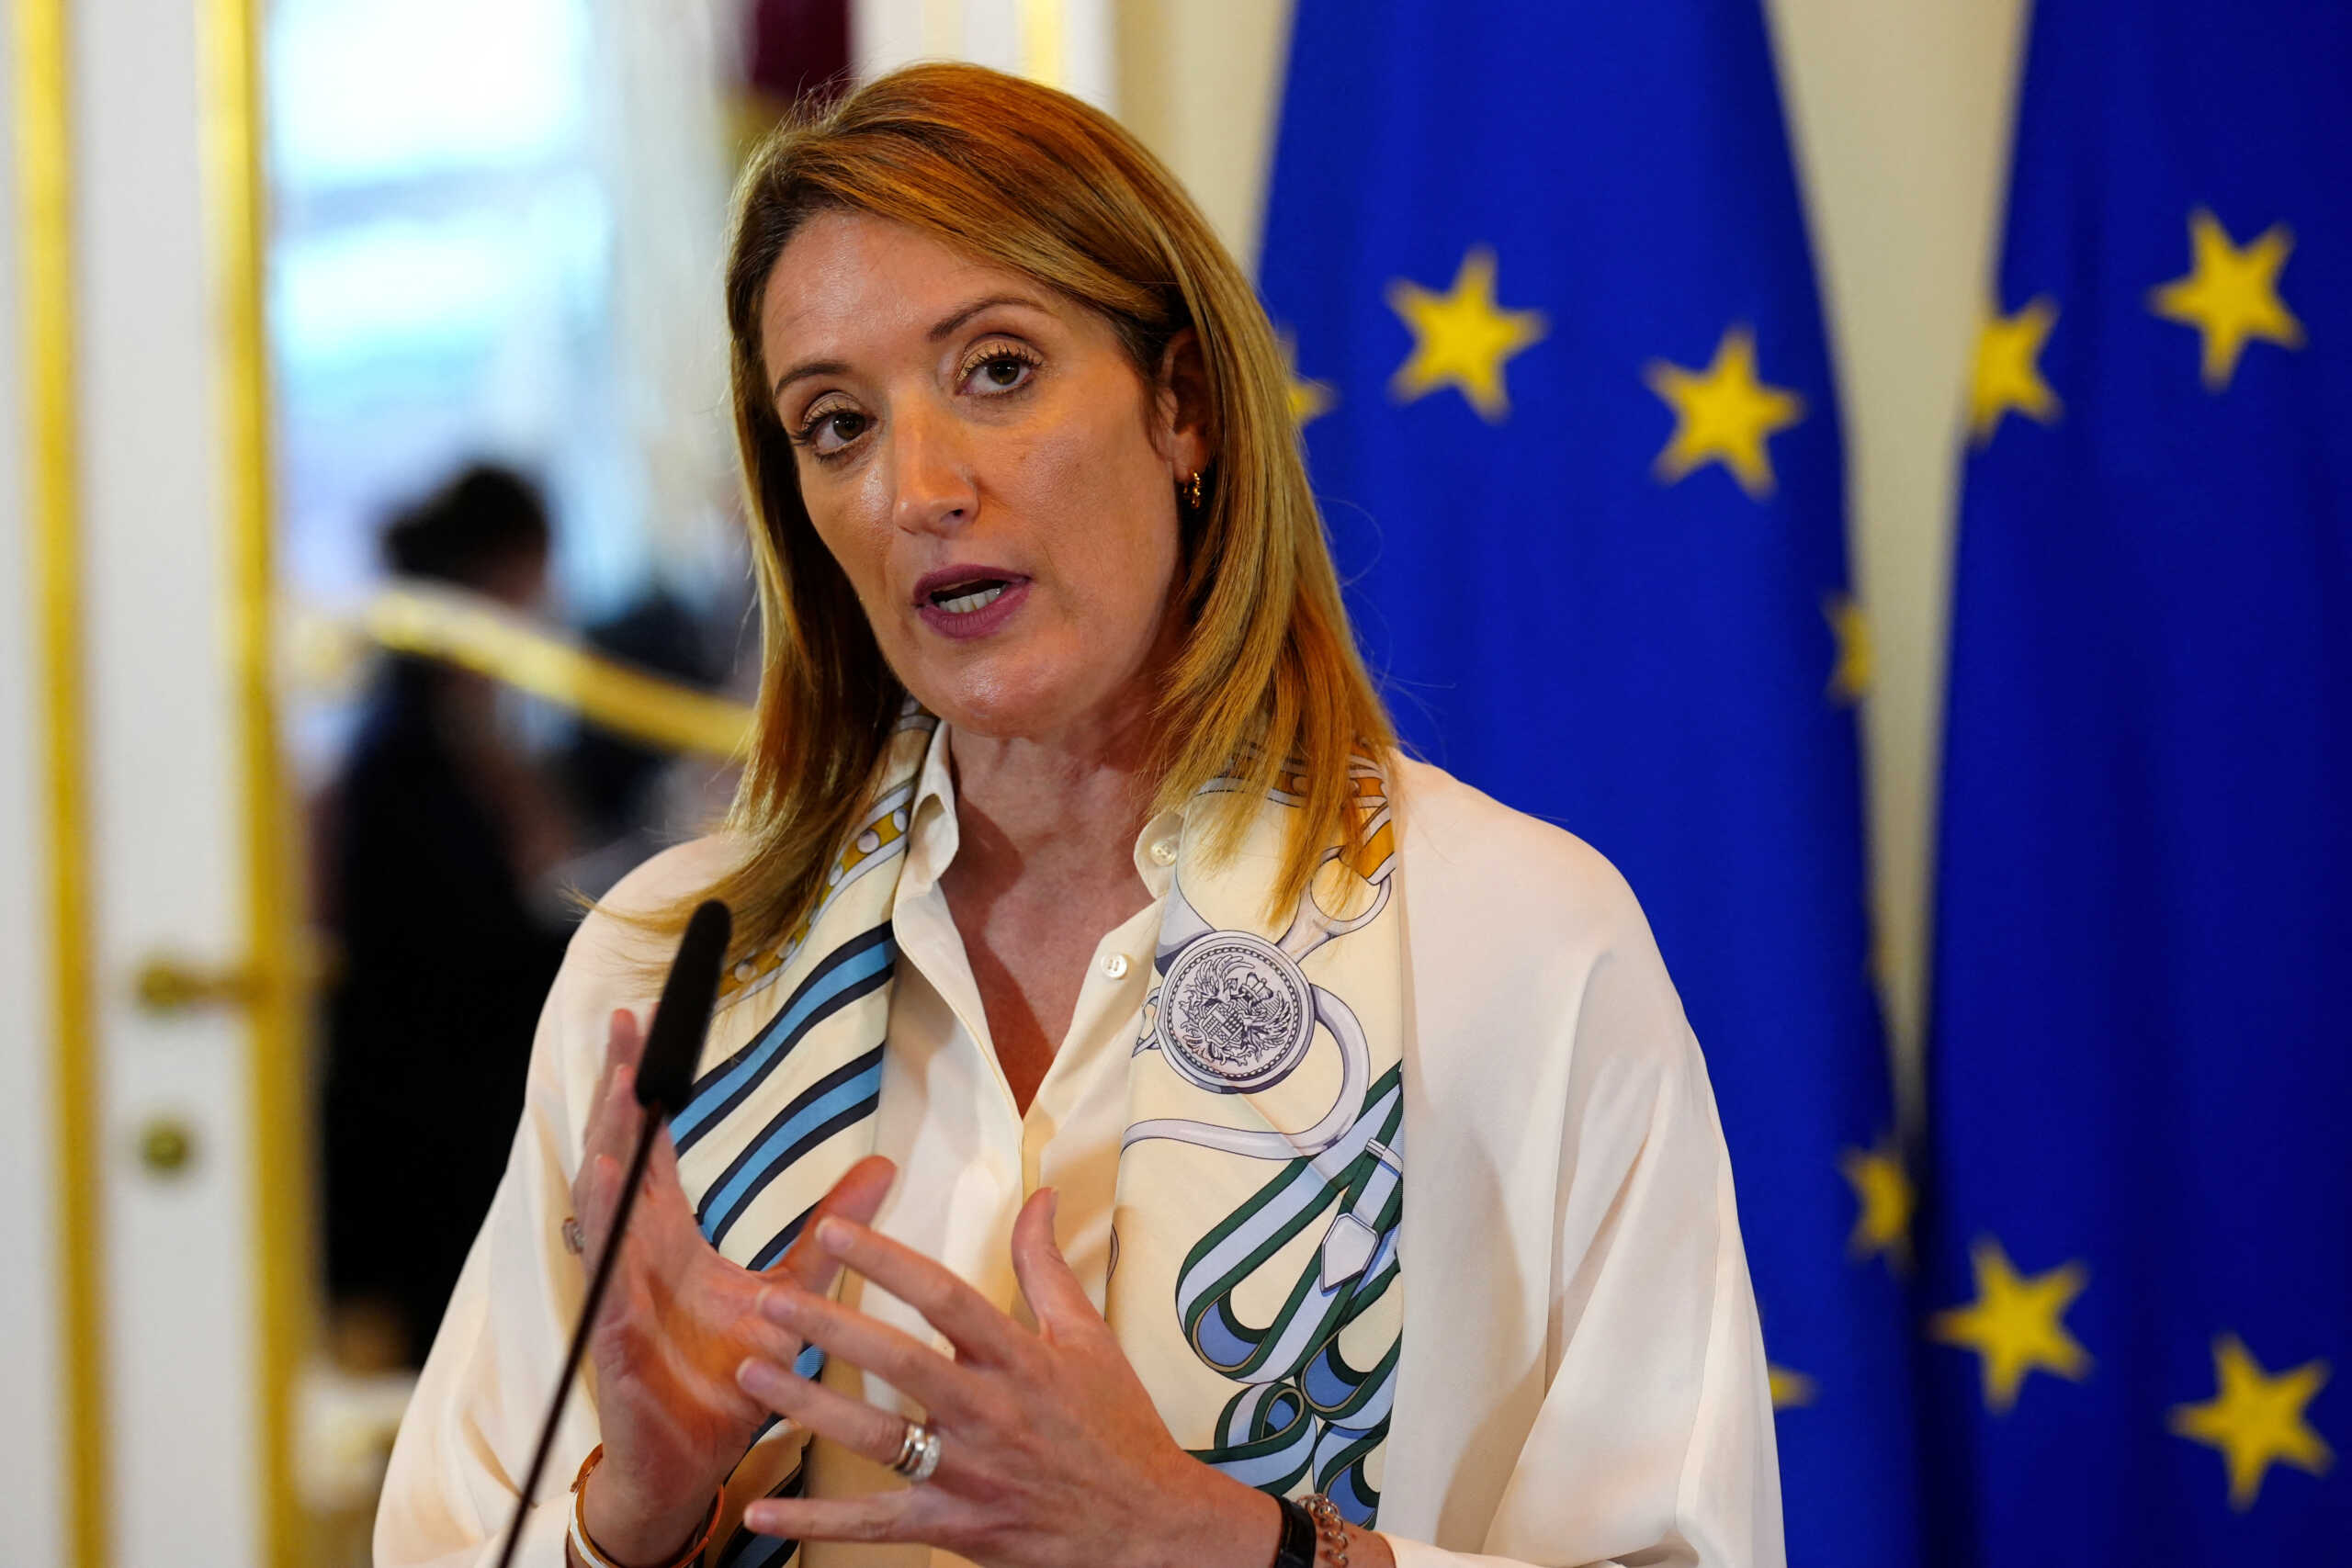 Εύα Καϊλή – Ρομπέρτα Μέτσολα: Οι αντιπρόεδροι έχουν εντολή να εκπροσωπούν μόνο τις θέσεις του Ευρωκοινοβουλίου